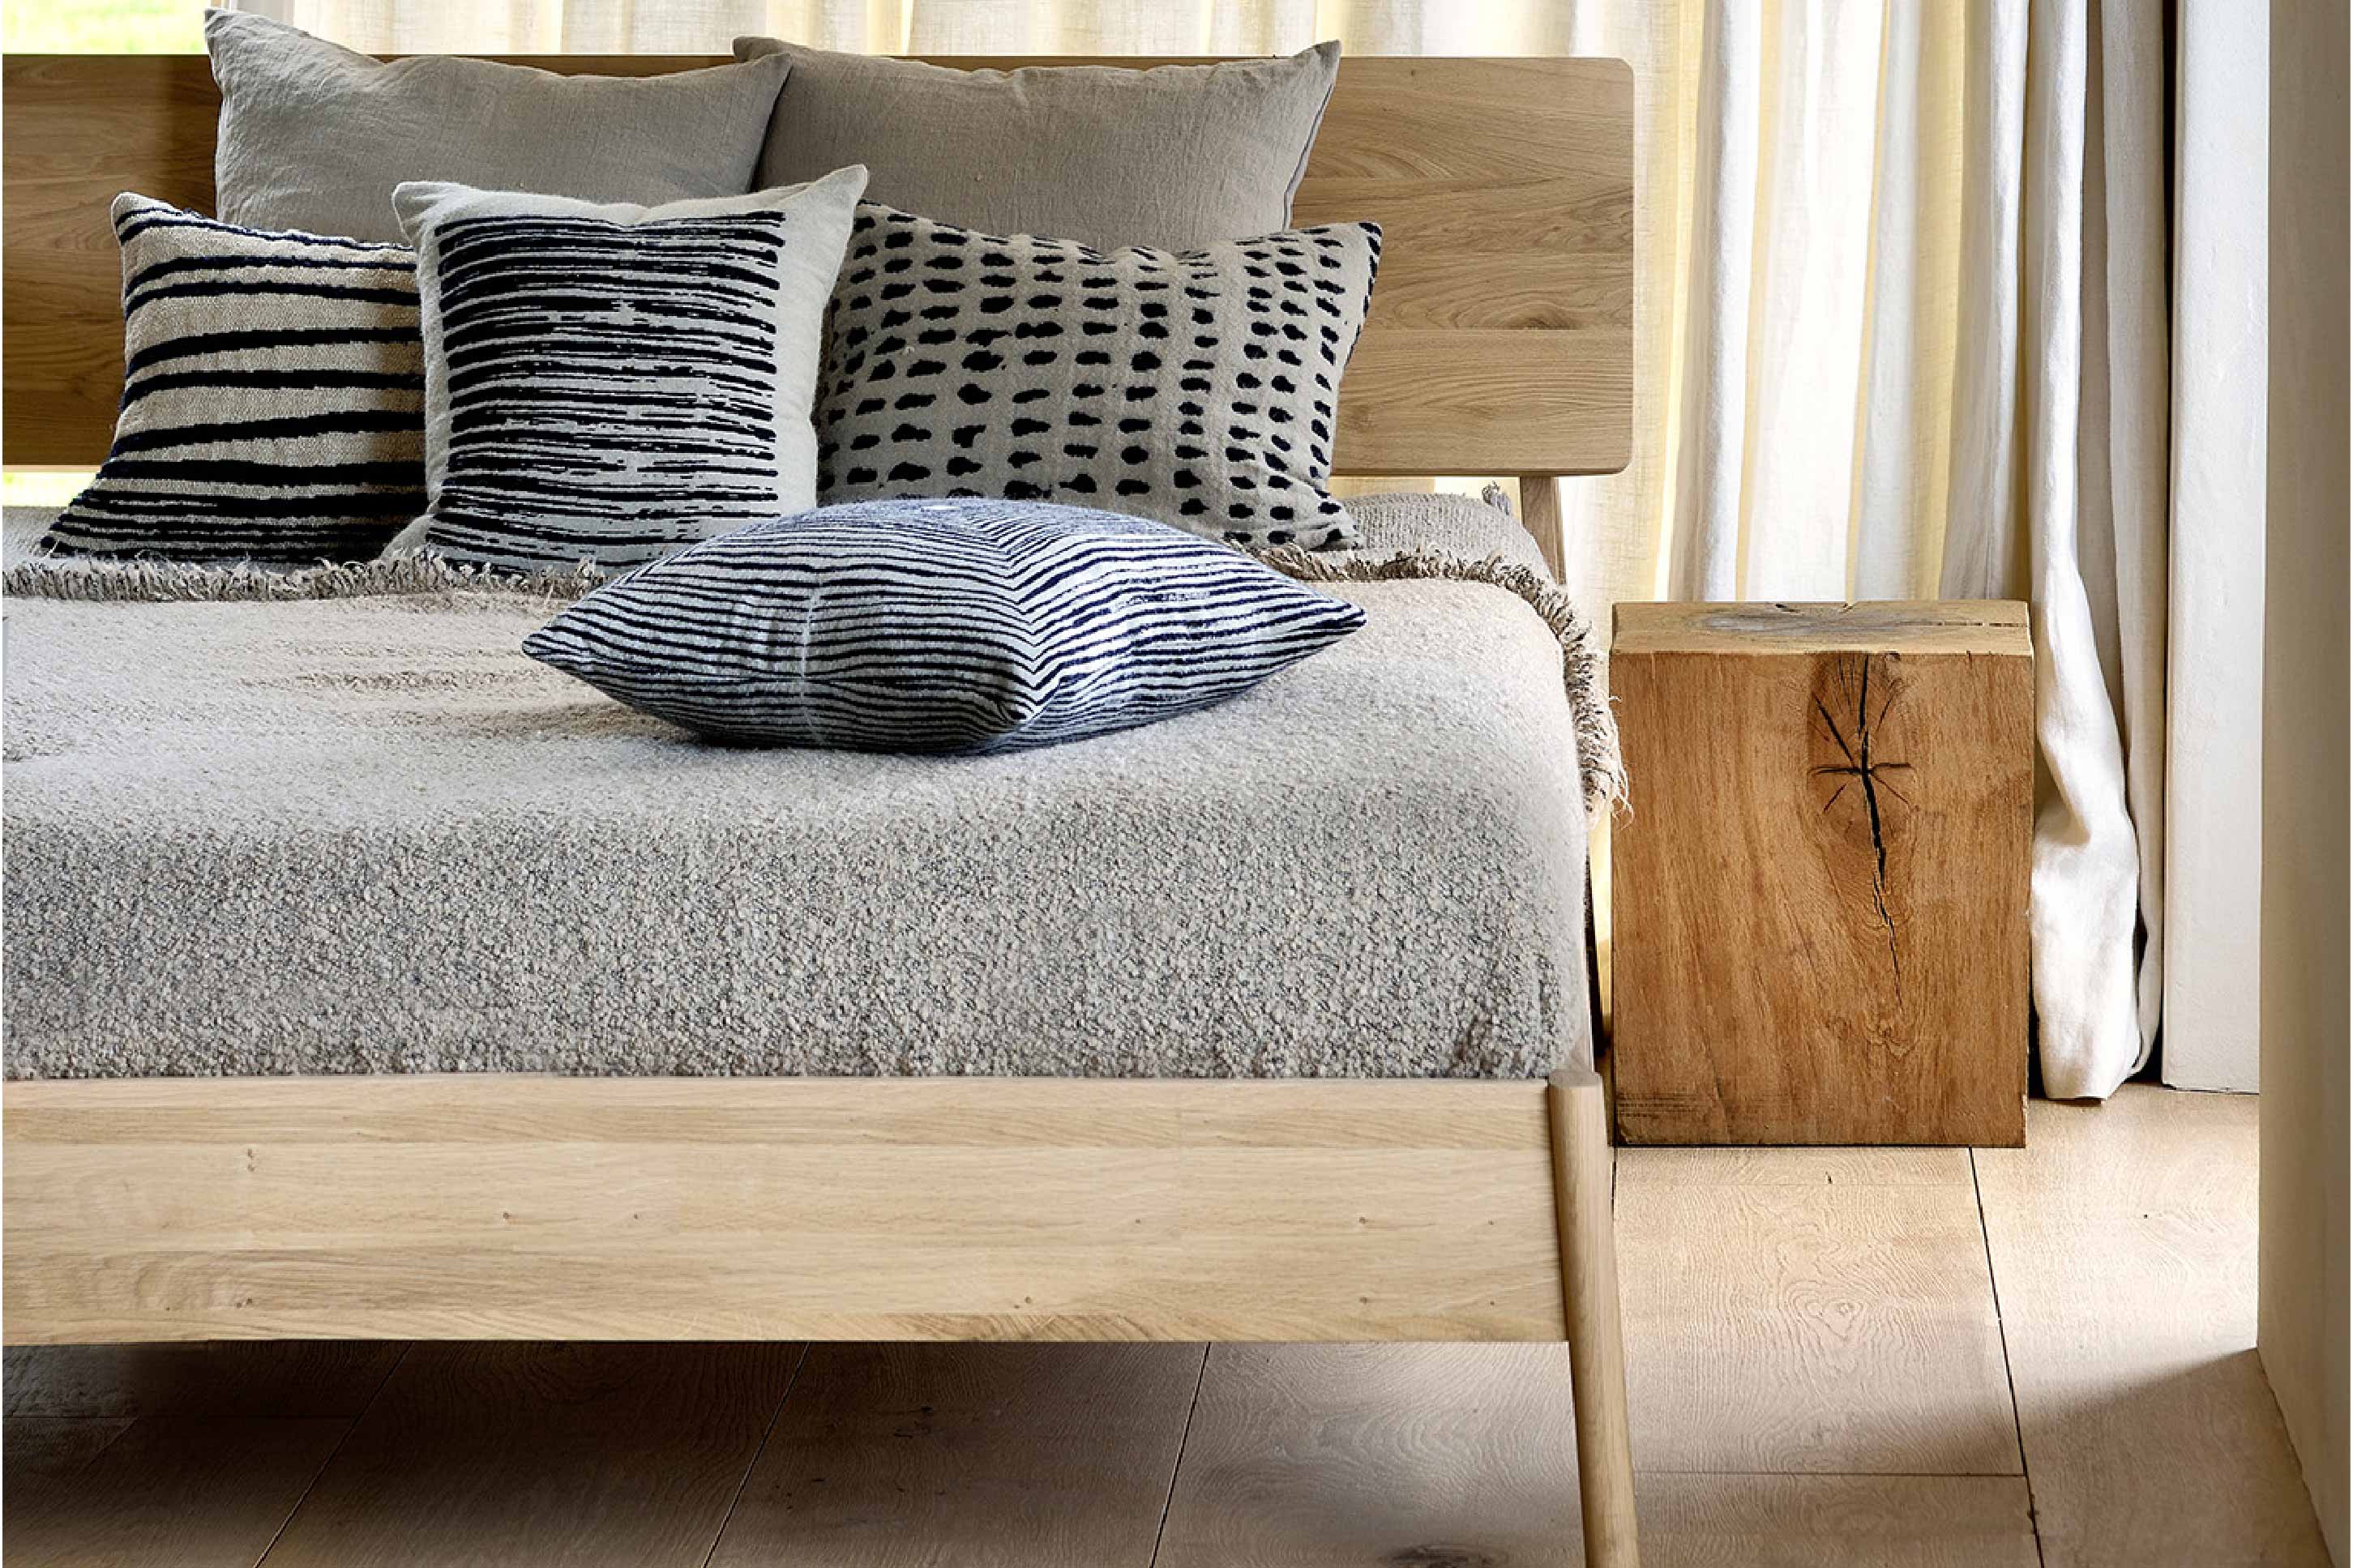 比利時原裝進口實木傢俬 - 臥室系列 - Air系列橡木床